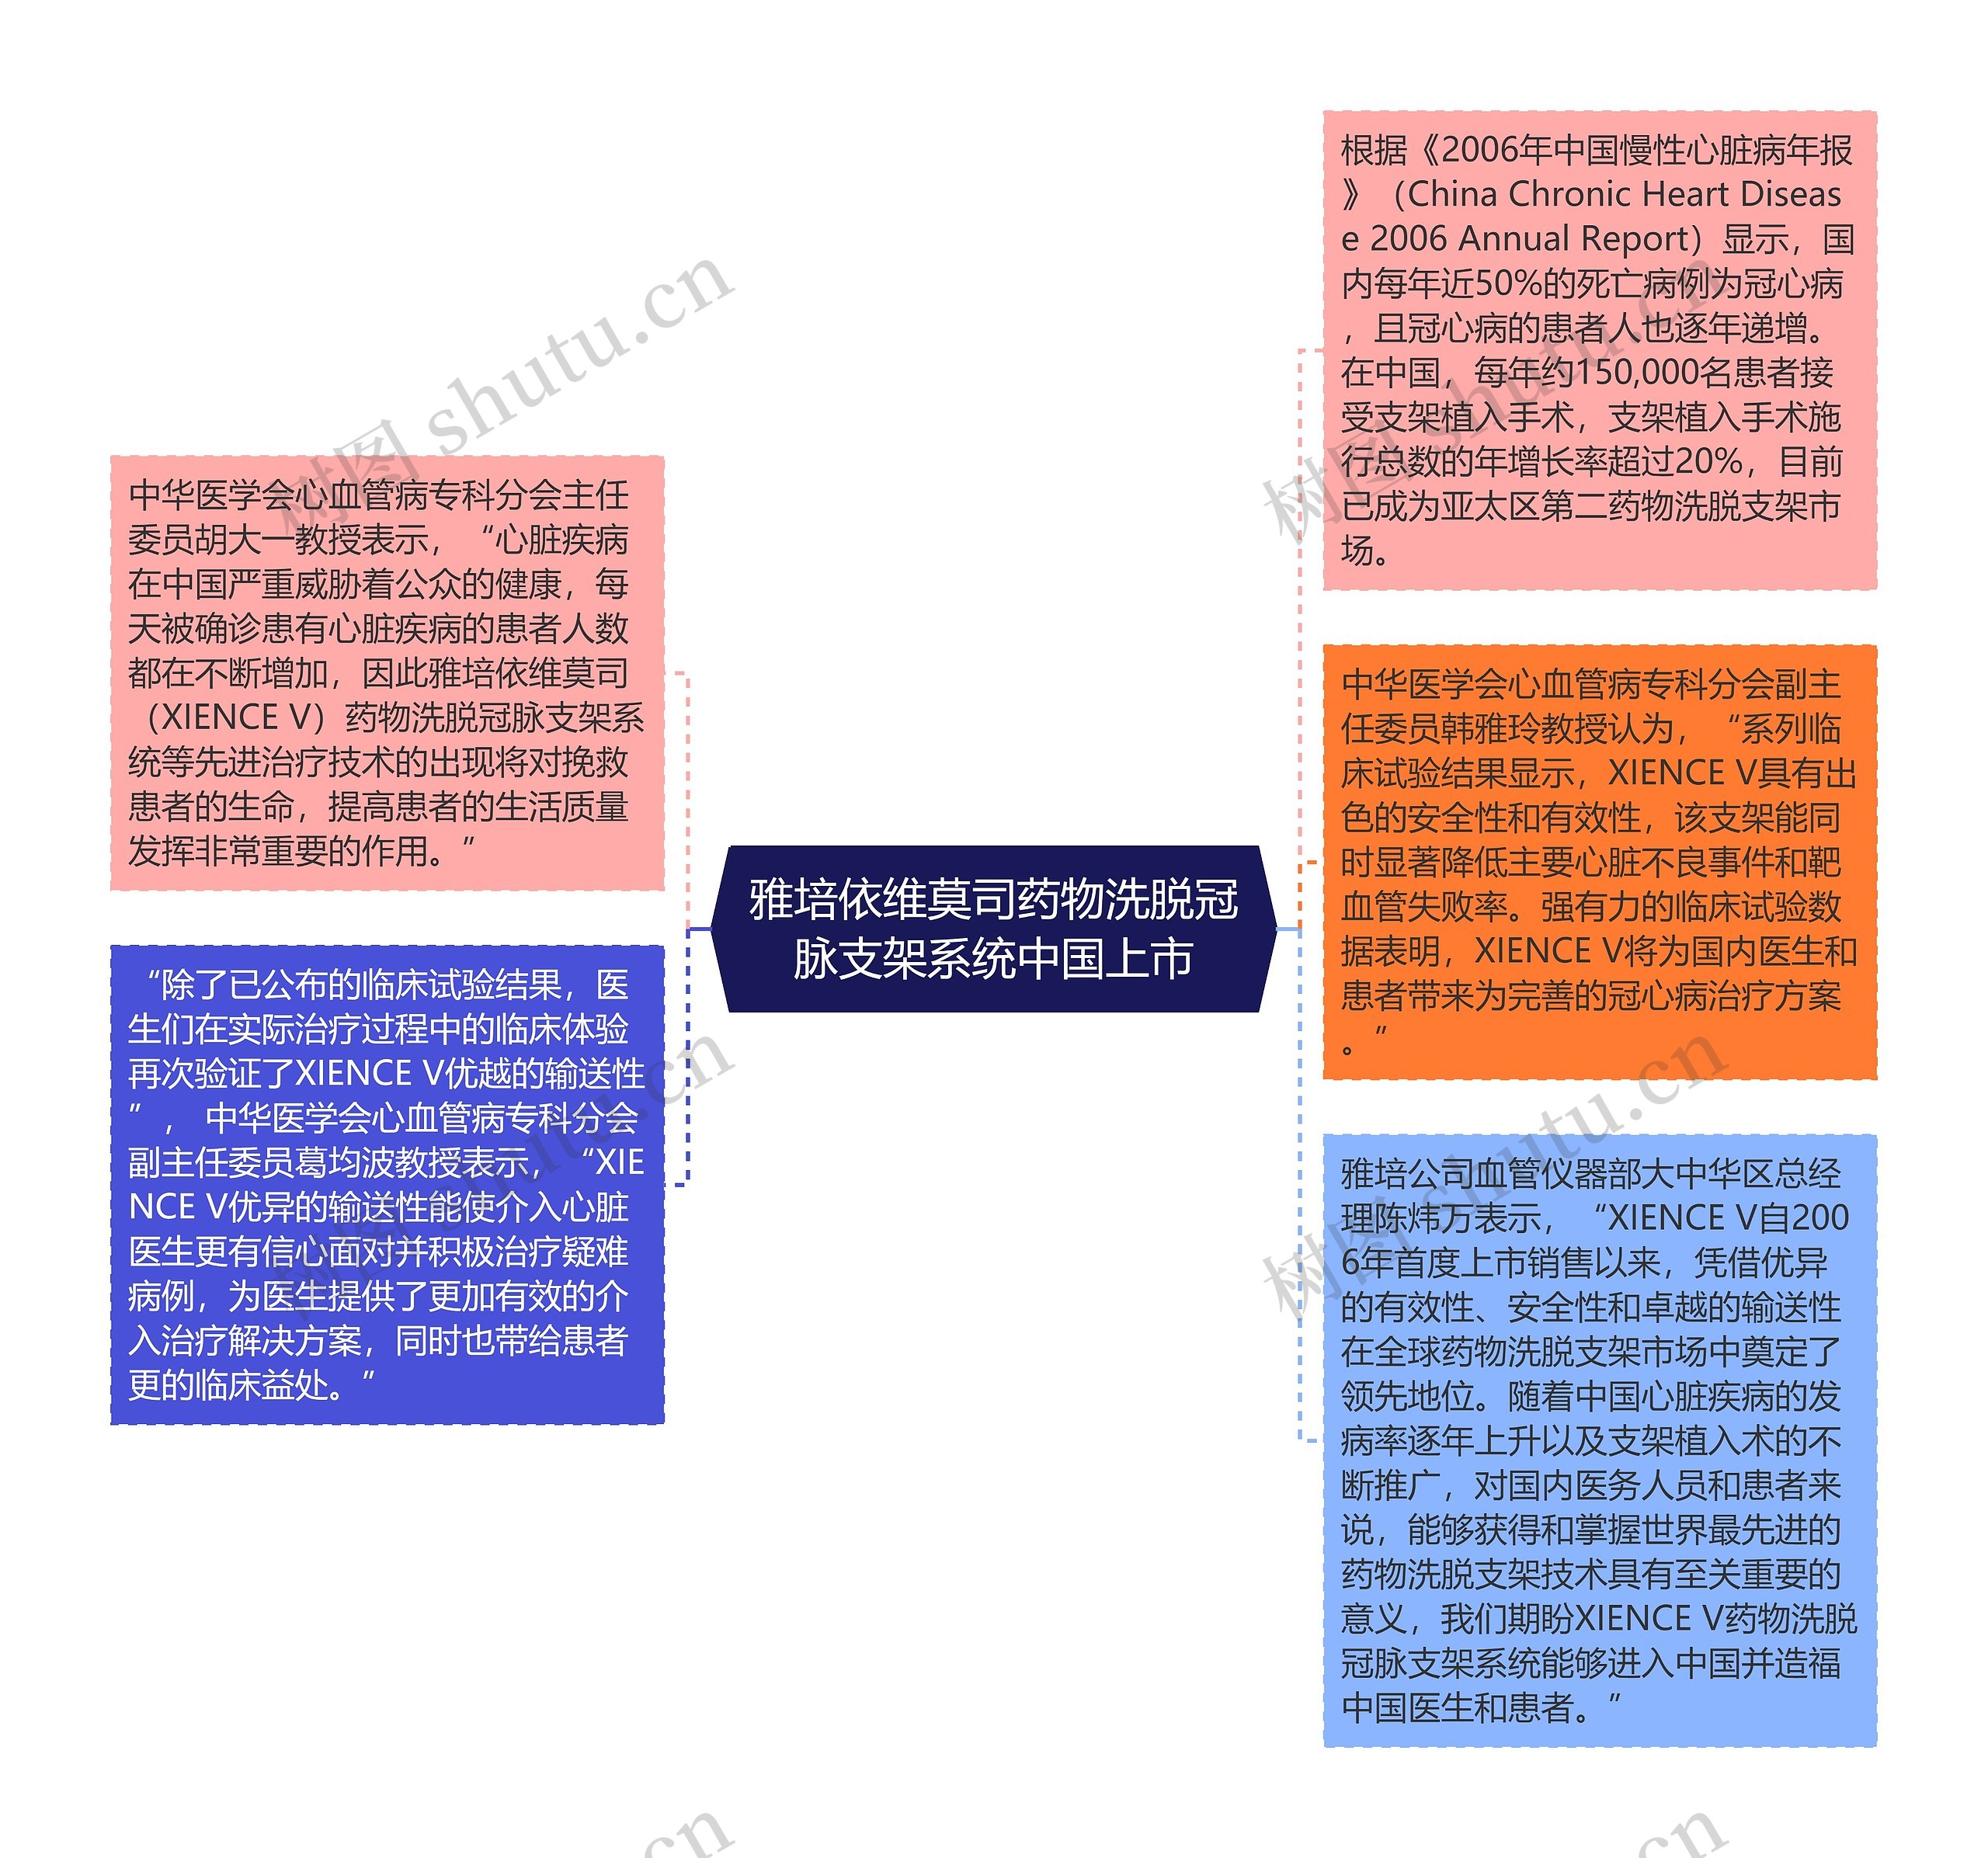 雅培依维莫司药物洗脱冠脉支架系统中国上市思维导图